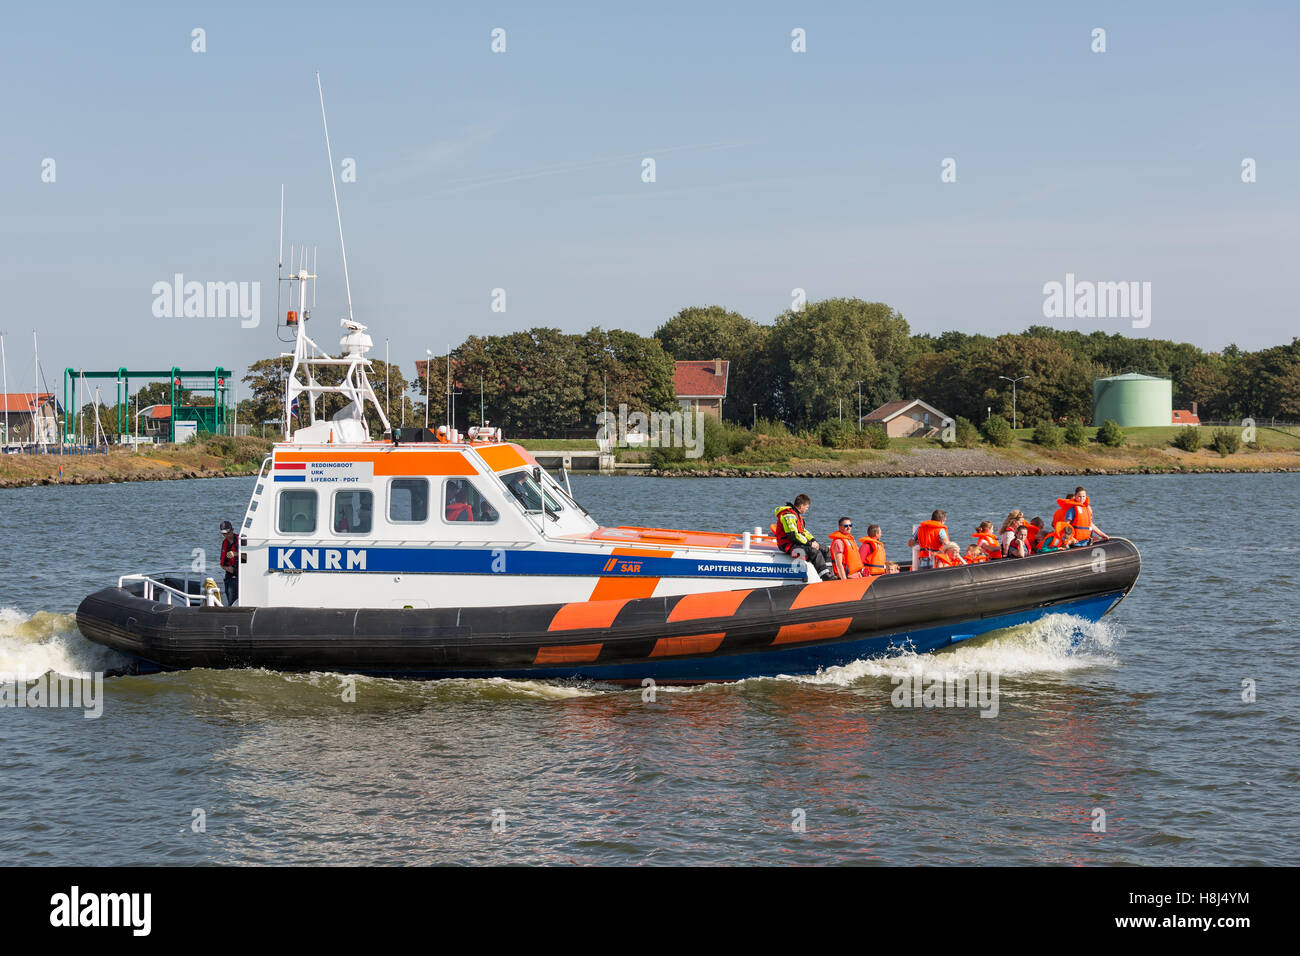 Unbekannte Menschen machen eine Bootsfahrt auf einem rettungsboot Demonstration iin der Hafen von Urk, Niederlande Stockfoto